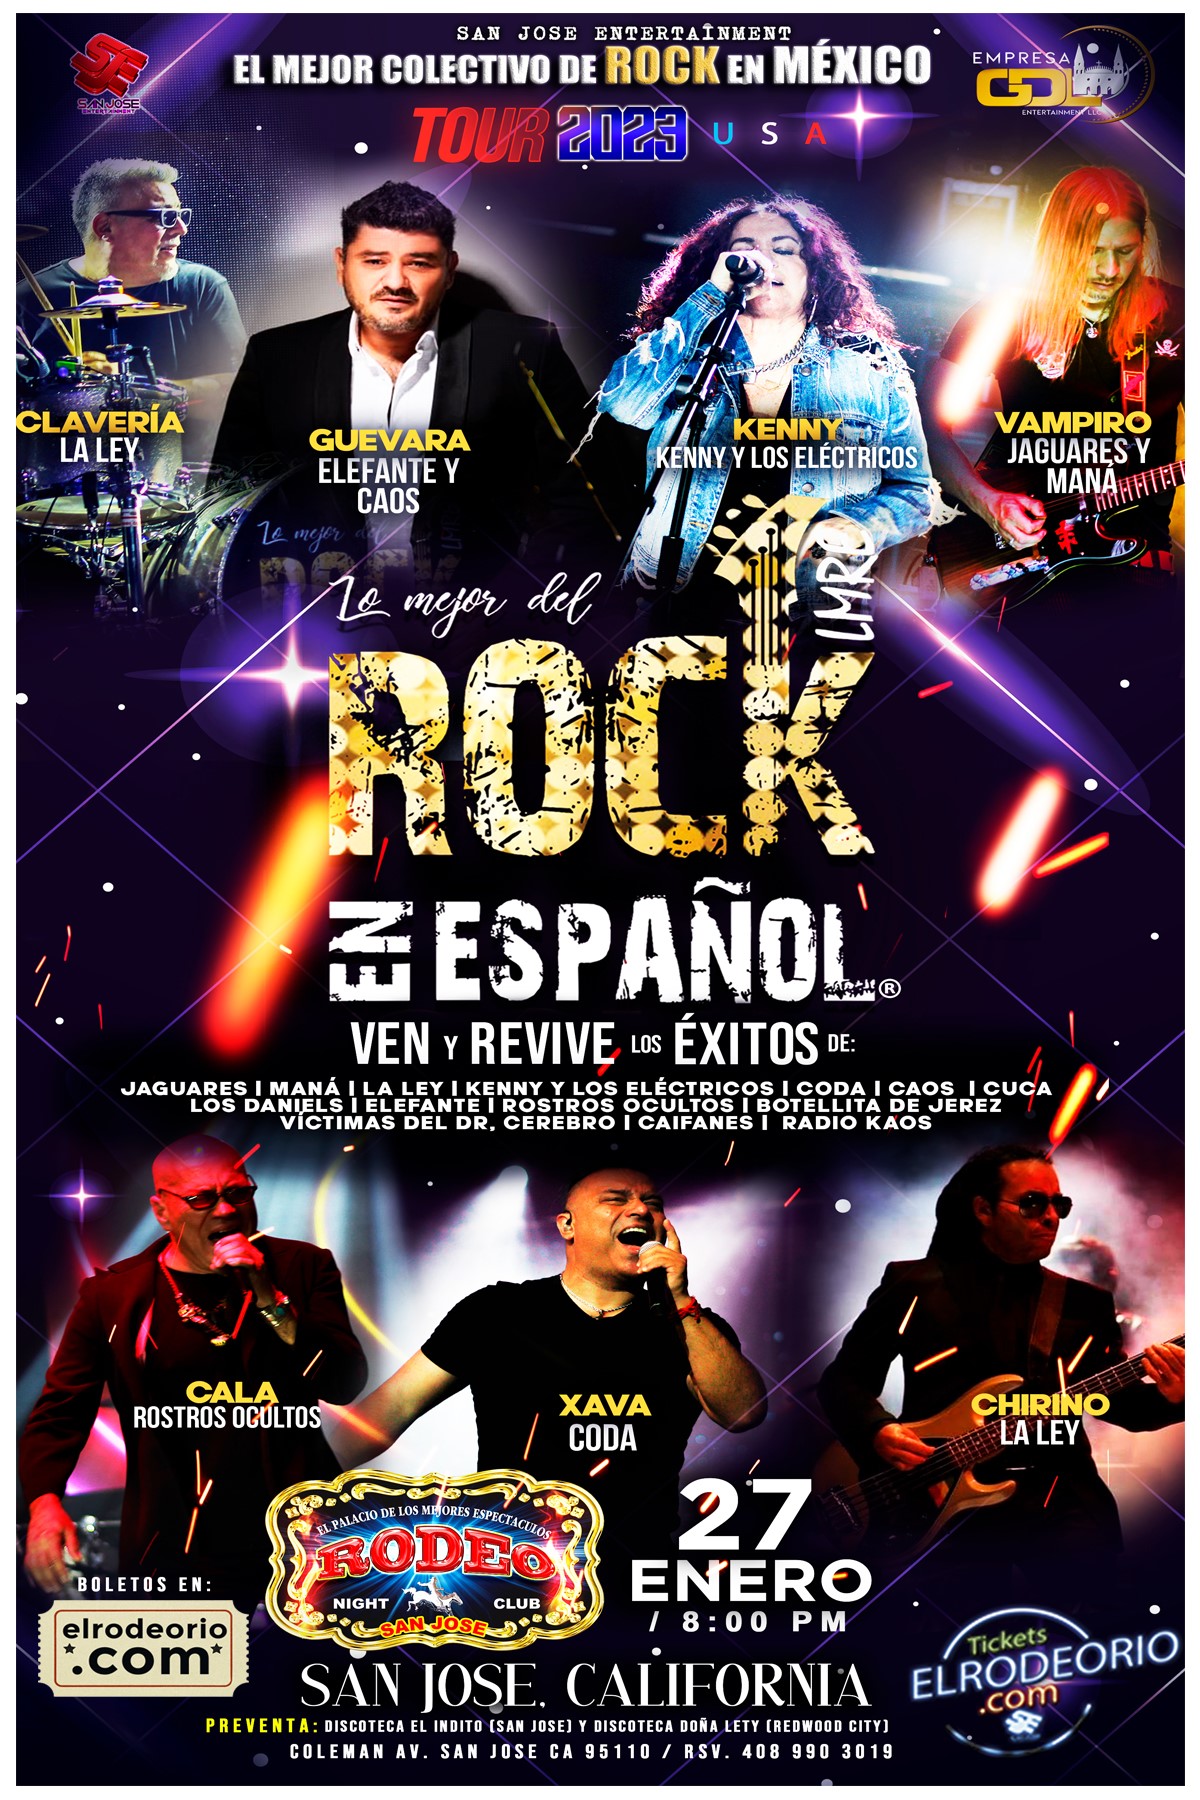 El Mejor Colectivo de Rock en Mexico Rock en Español!! on Jan 27, 21:00@Club Rodeo - Buy tickets and Get information on elrodeorio.com sanjoseentertainment